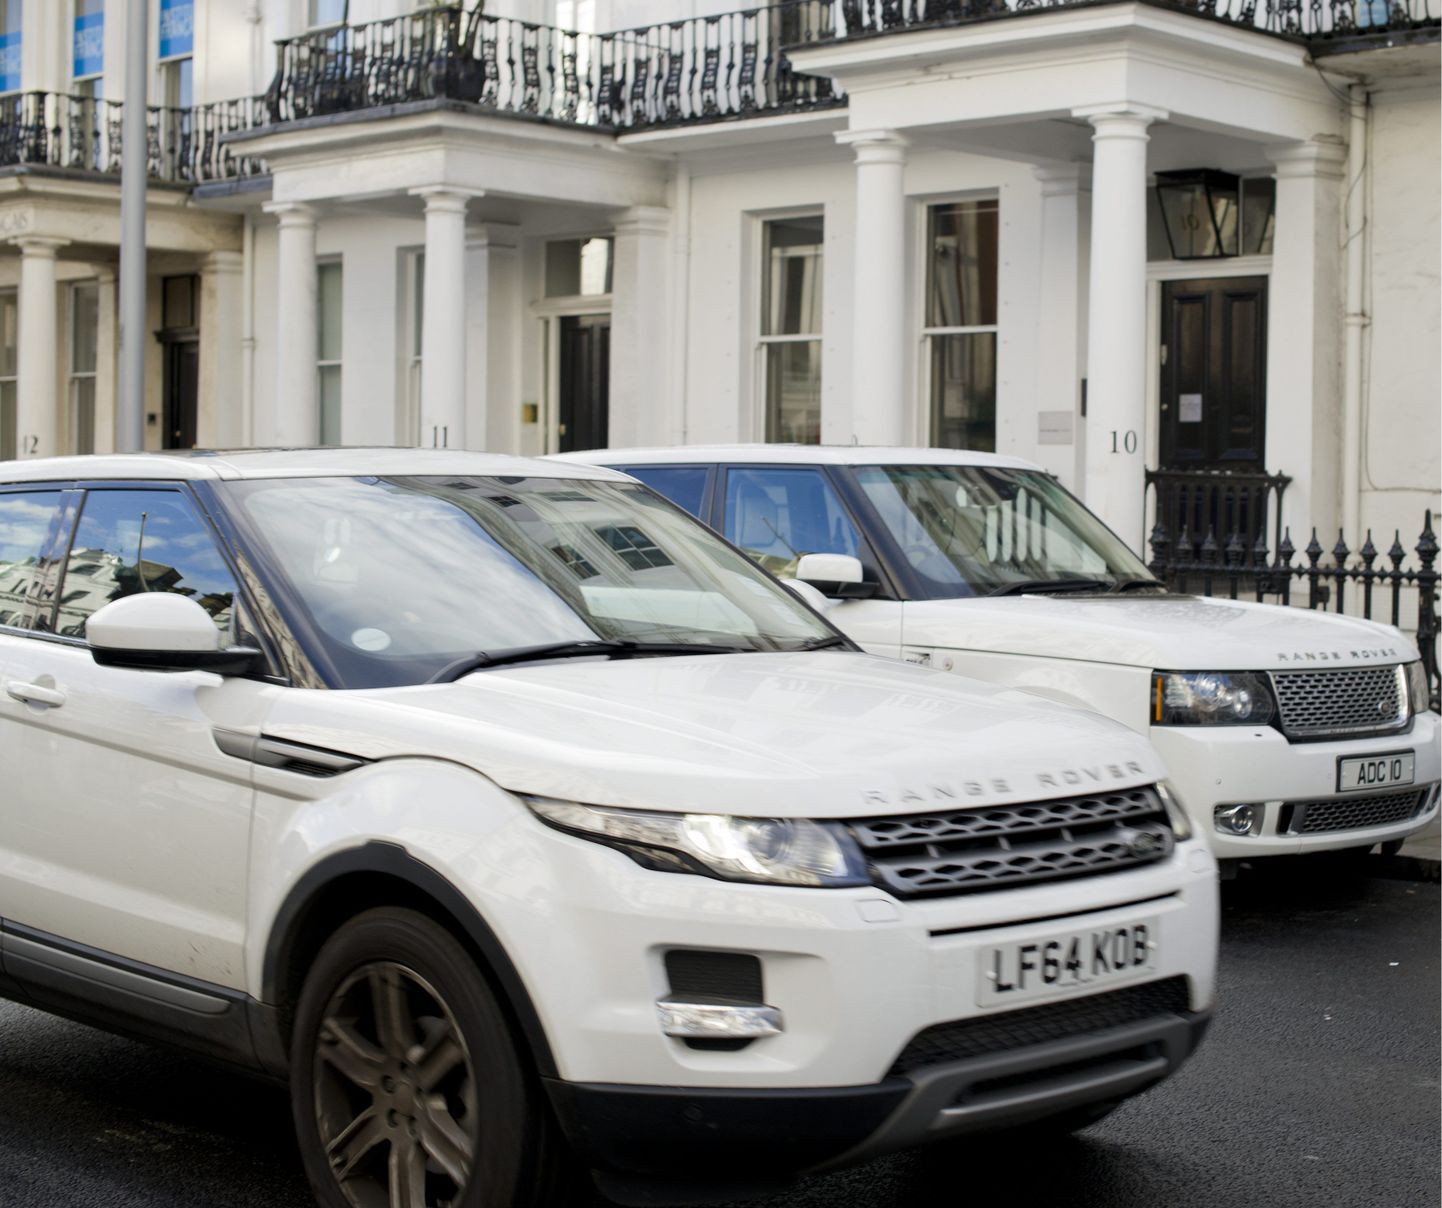 Londoni politsei sai juhised peatada isikutuvastamiseks kinni kõik Range Roverite juhid